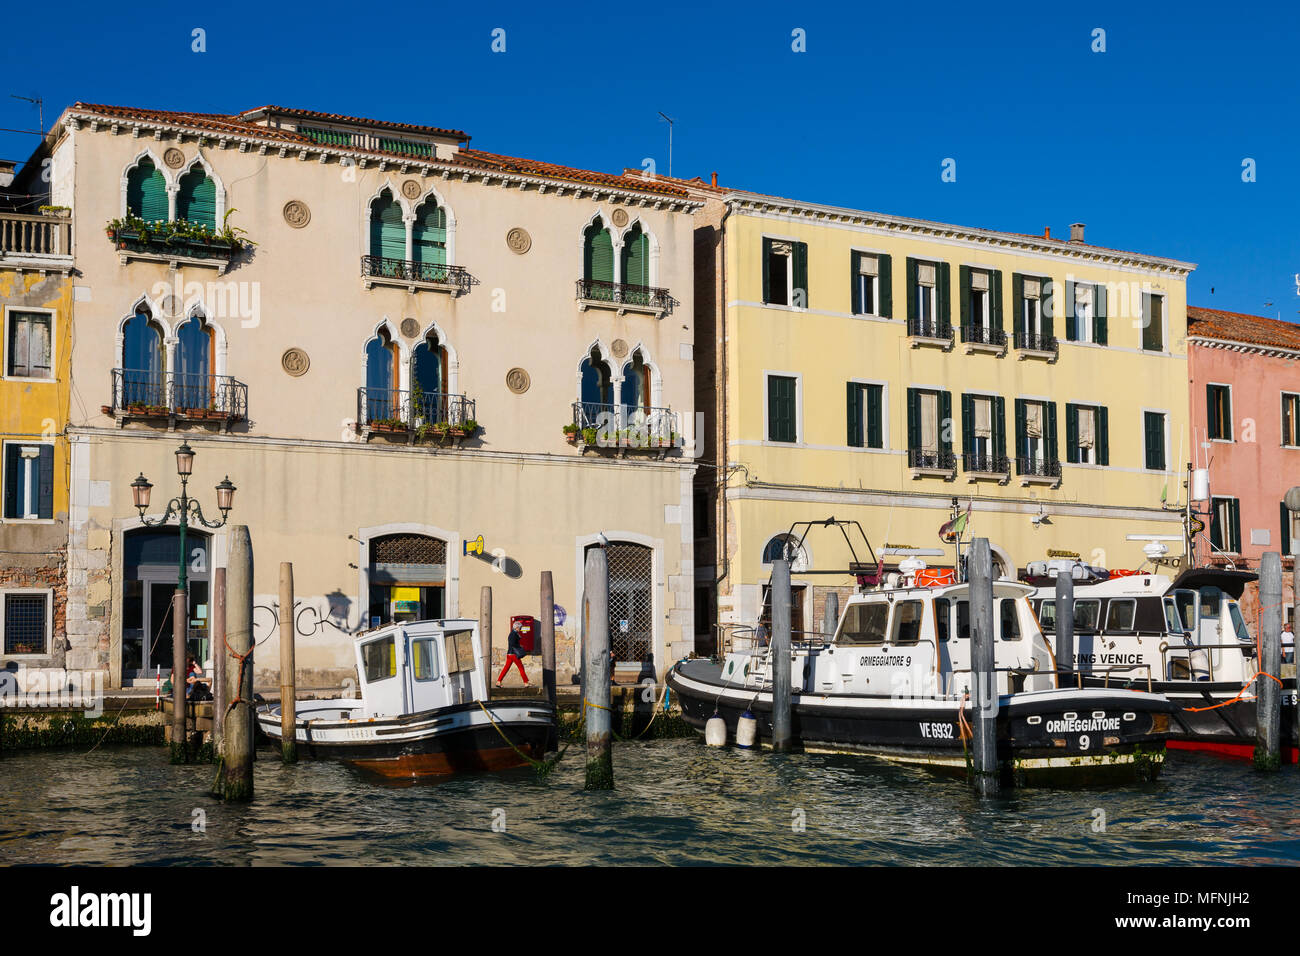 Canal grande, Venice, Italy Stock Photo